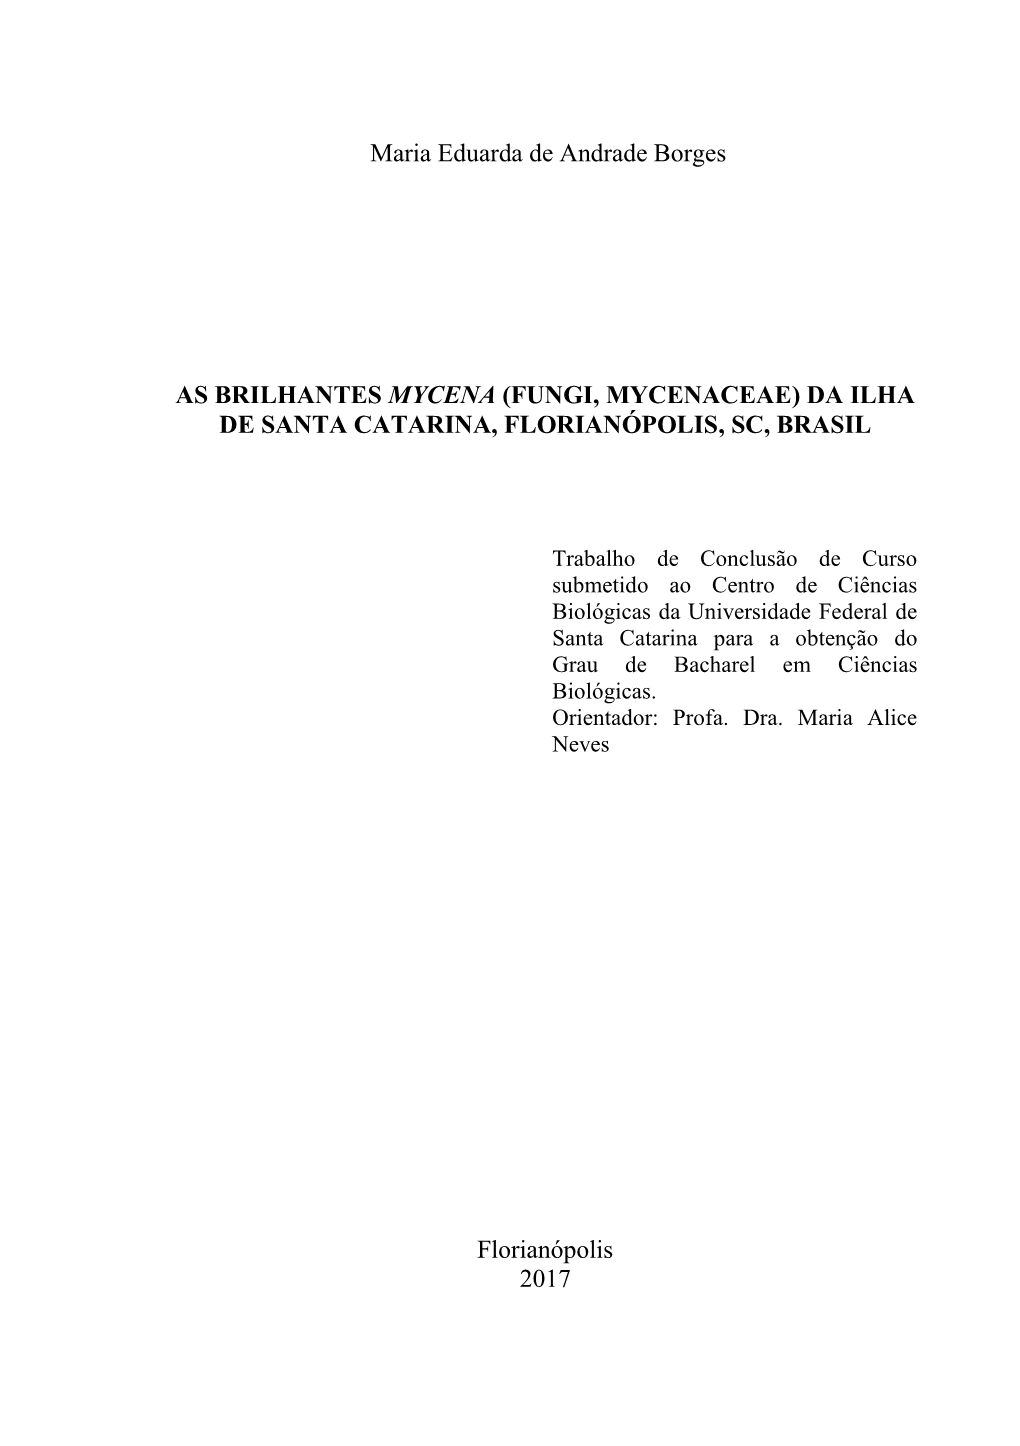 Universidade Federal De Santa Catarina Para a Obtenção Do Grau De Bacharel Em Ciências Biológicas